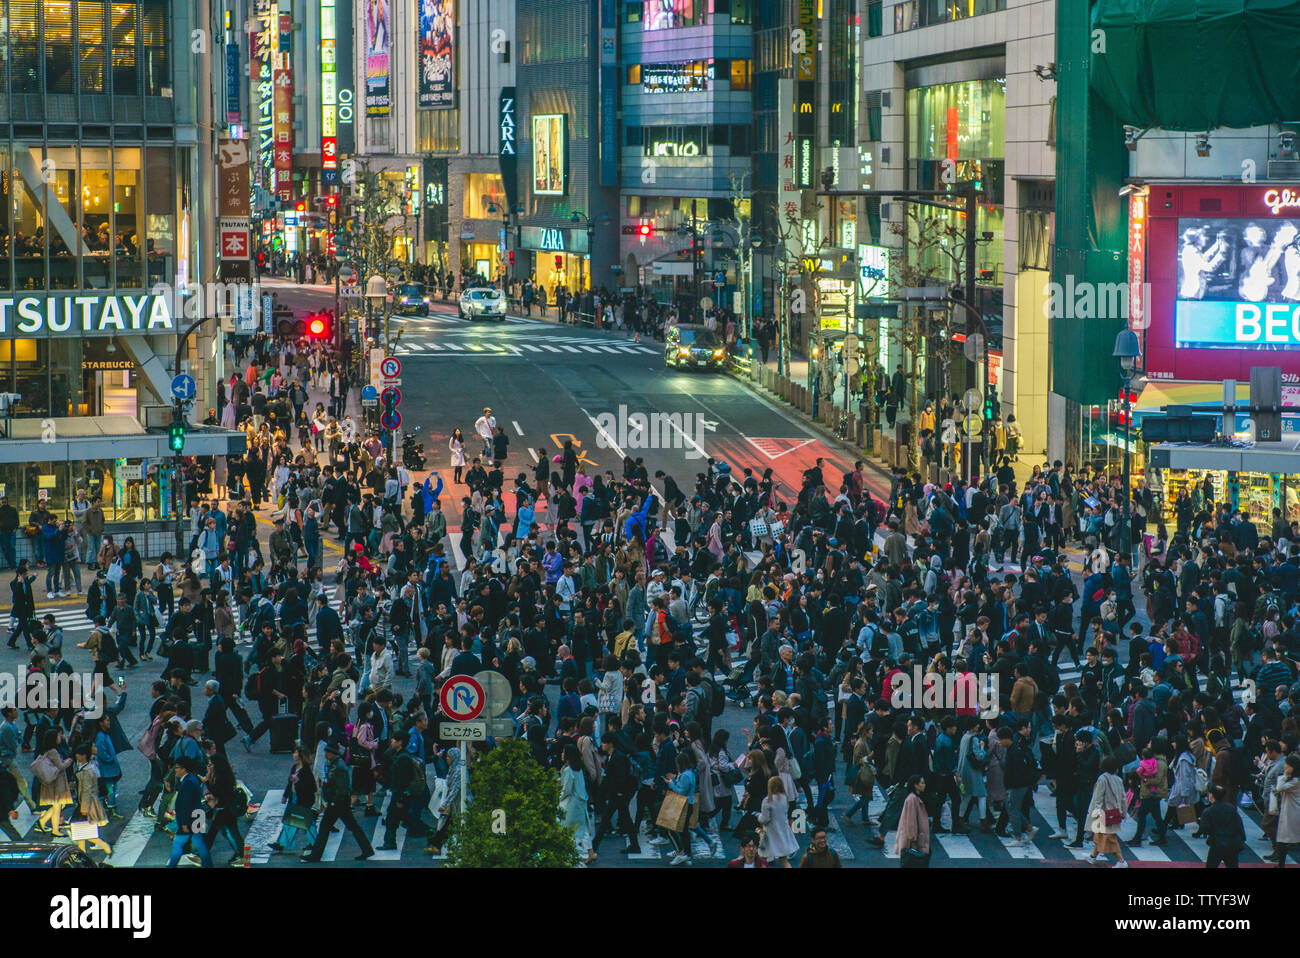 Tokyo, Giappone - Aprile 5, 2018: Shibuya Crossing, una famosa in tutto il mondo e iconico intersezione in Shibuya, Tokyo. Centinaia di persone provenienti da tutte le direzioni a su Foto Stock